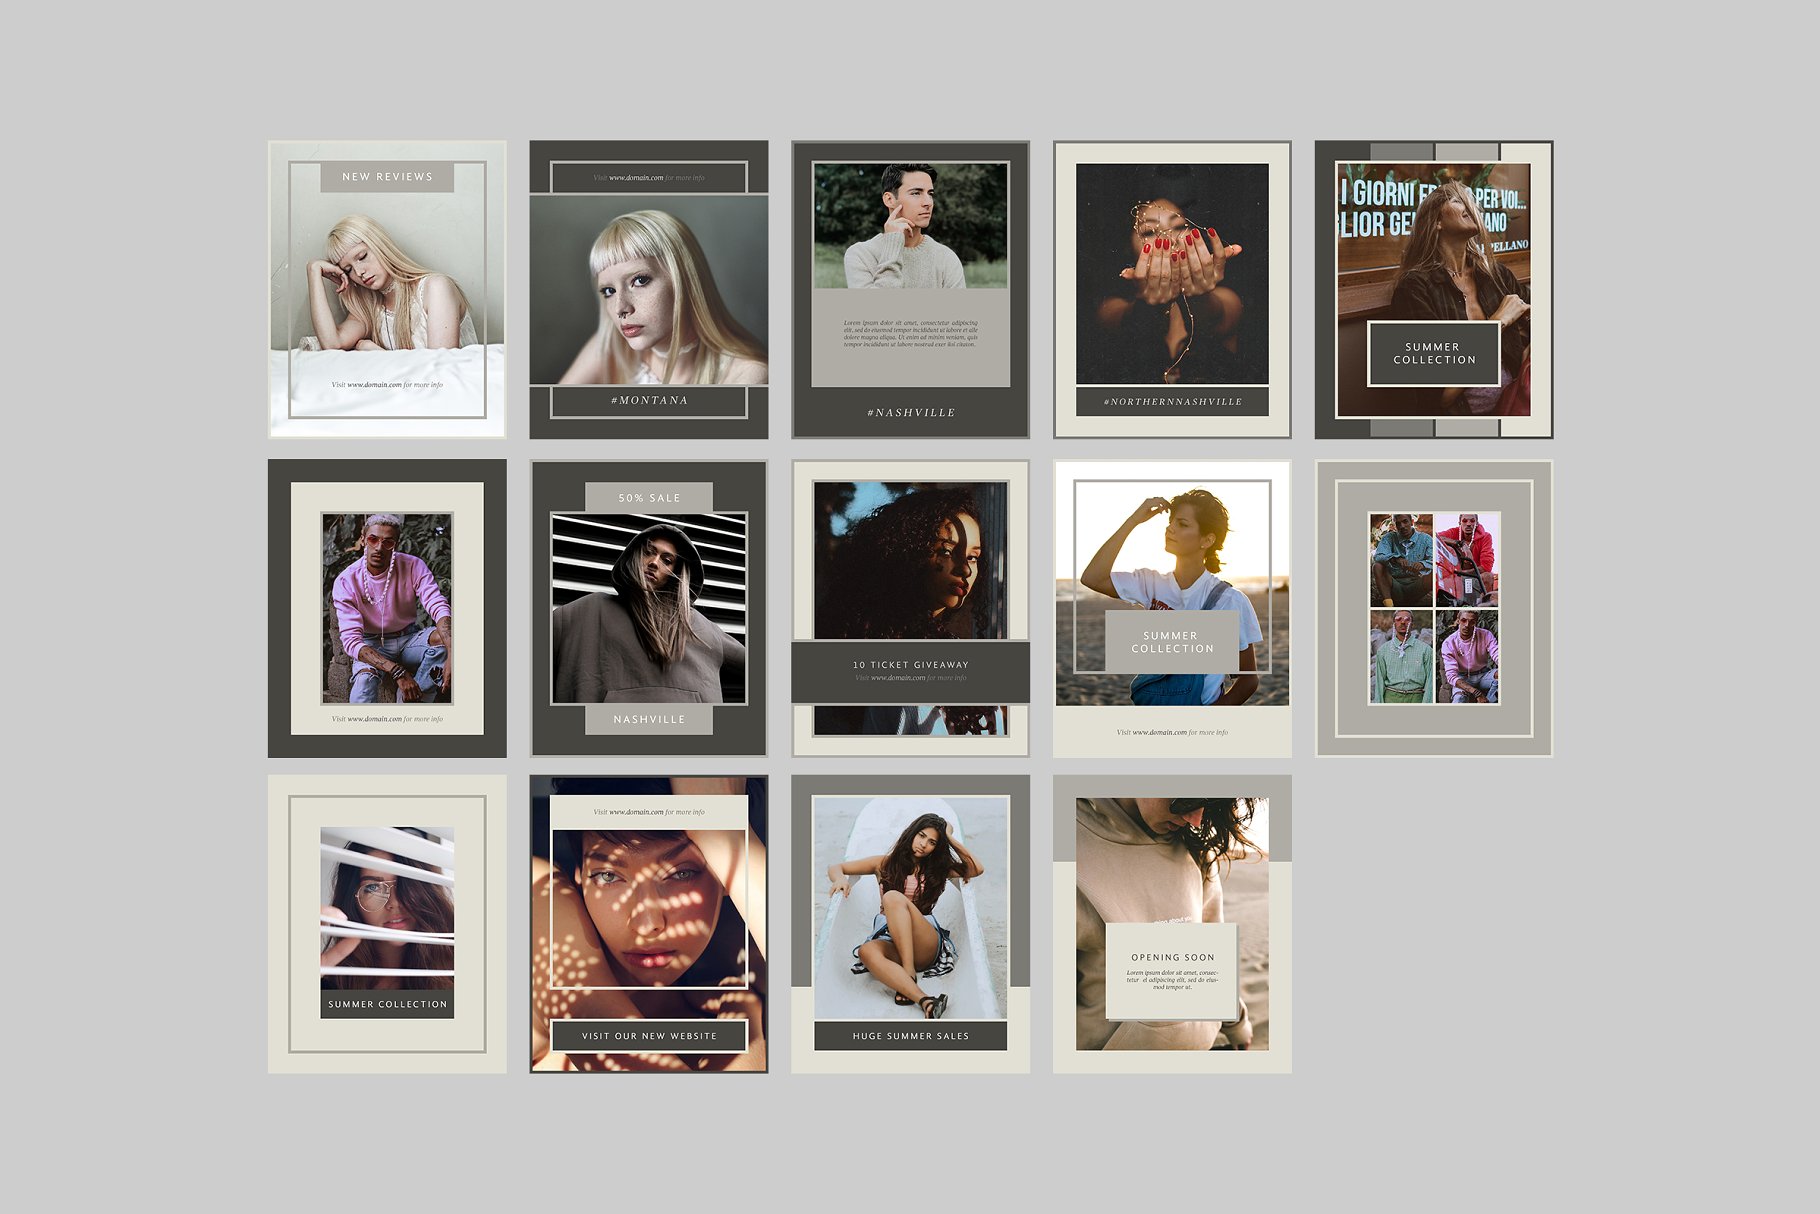 时尚模特摄影主题社交媒体贴图模板蚂蚁素材精选 Nashville Social Media Templates插图(7)